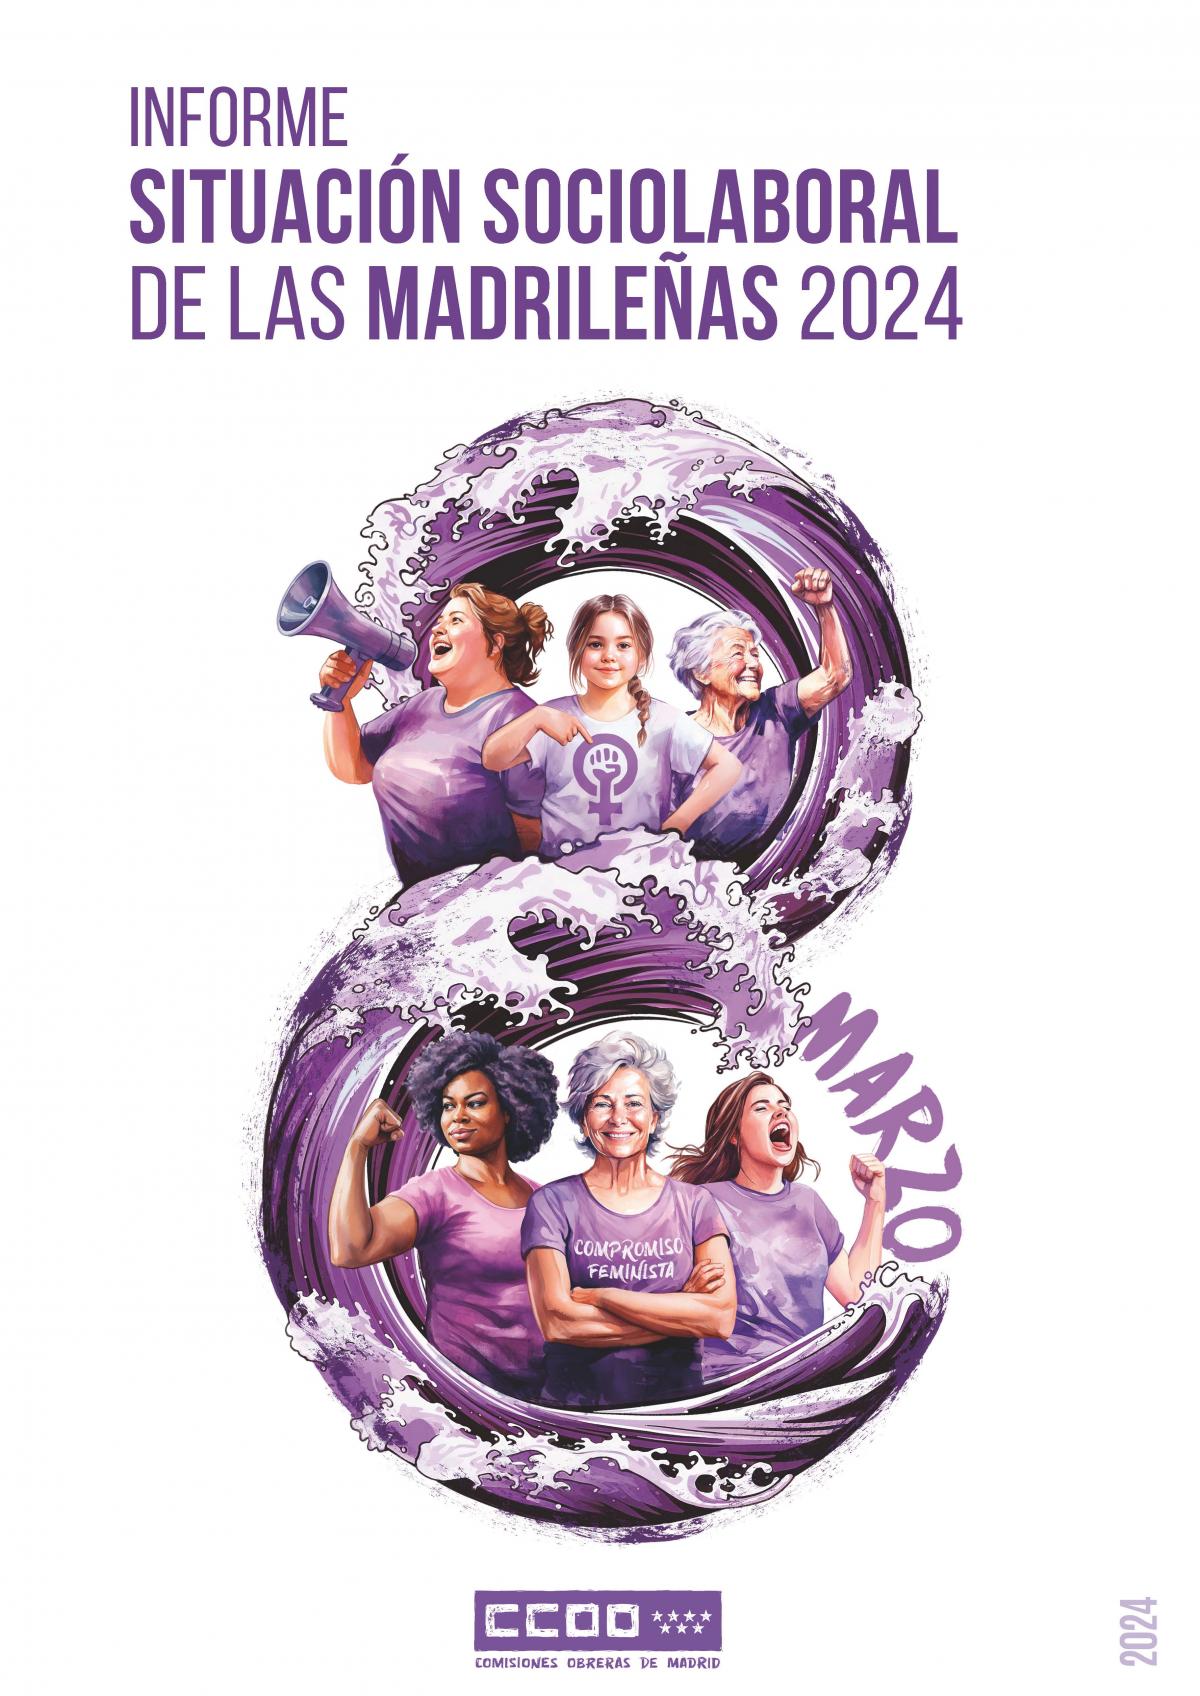 Informe Situacin sociolaboral de las madrileas 2024.